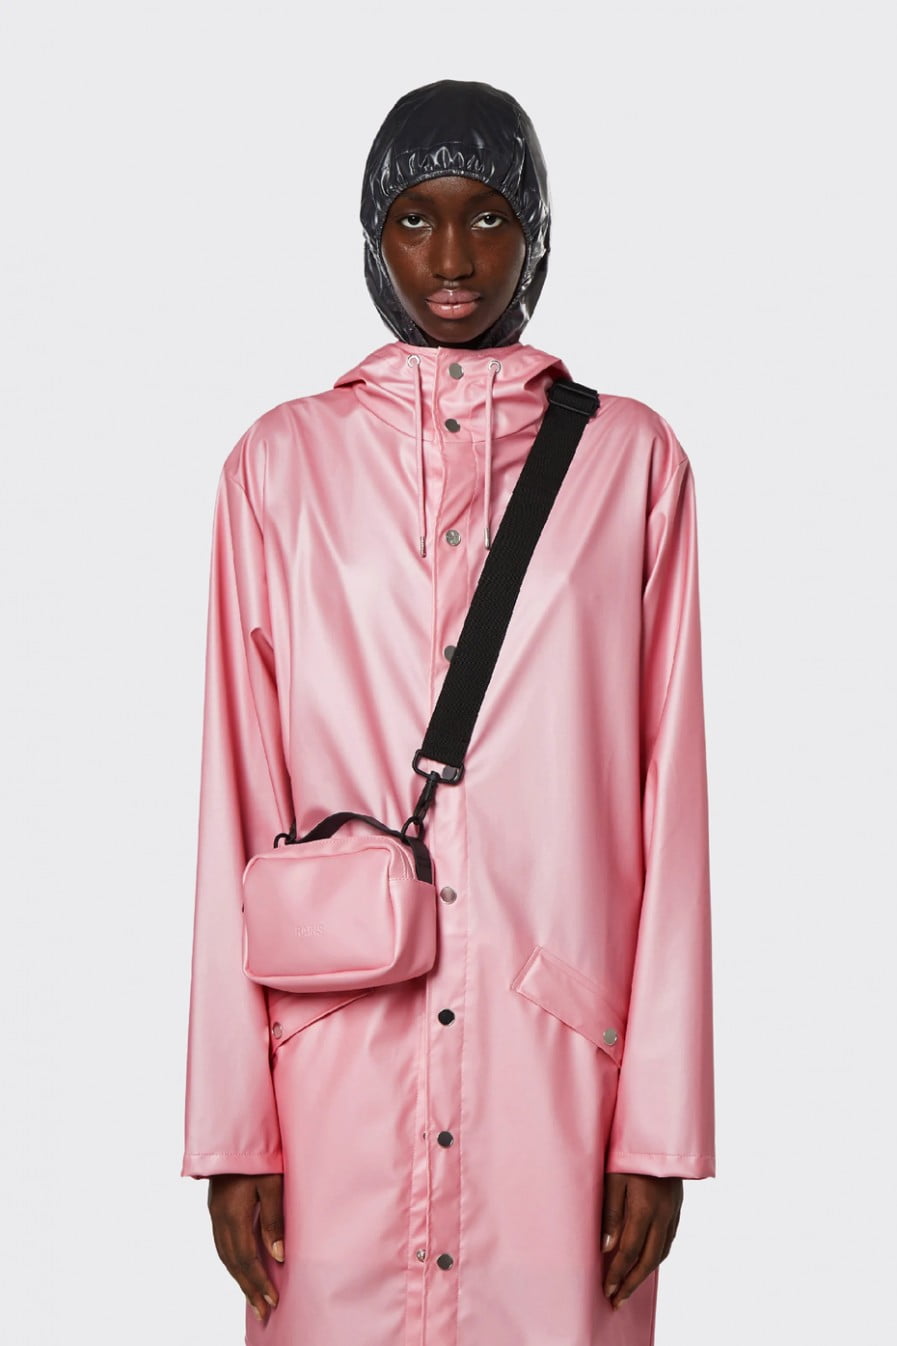 RAINS Box Bag Micro | Pink sky